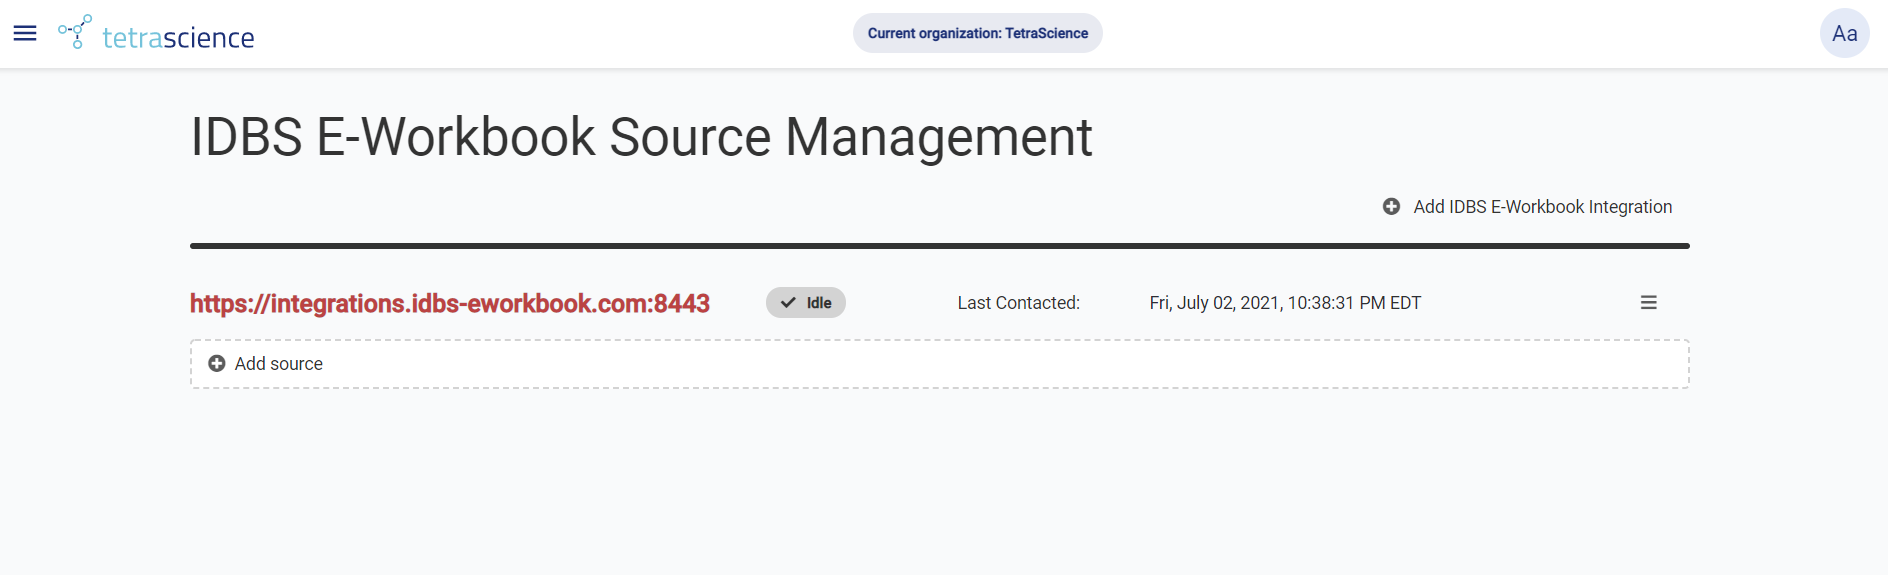 IDBS E-Workbook Source Management Screen